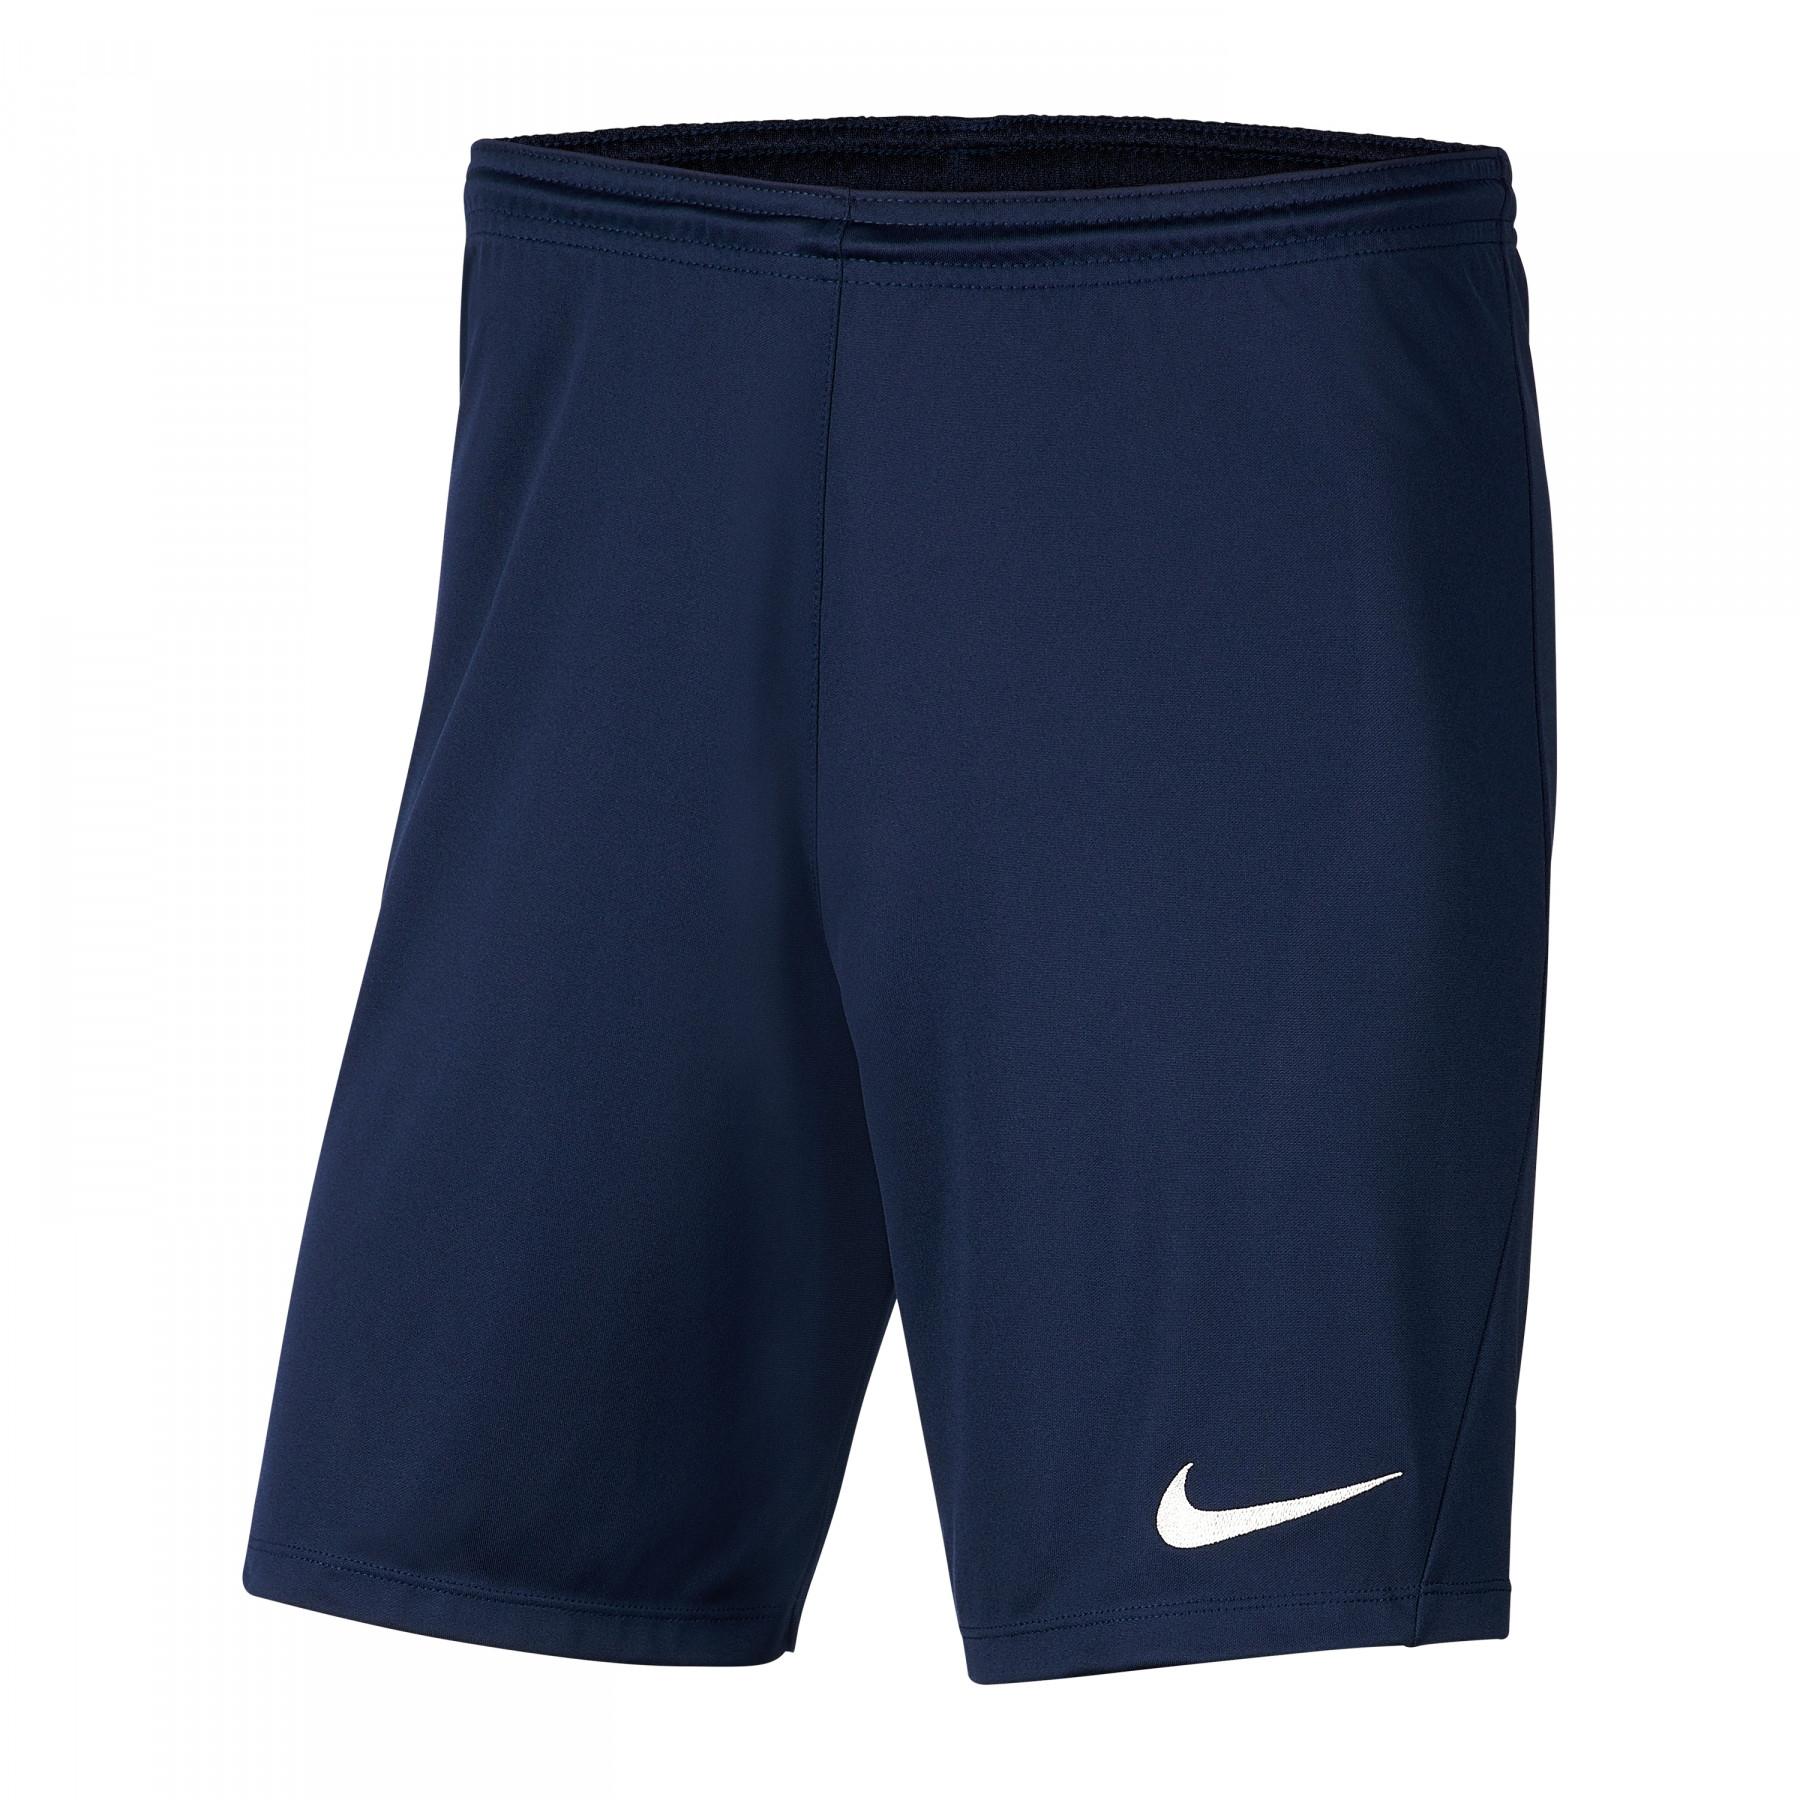 Kinder shorts Nike Dri-FIT Park III